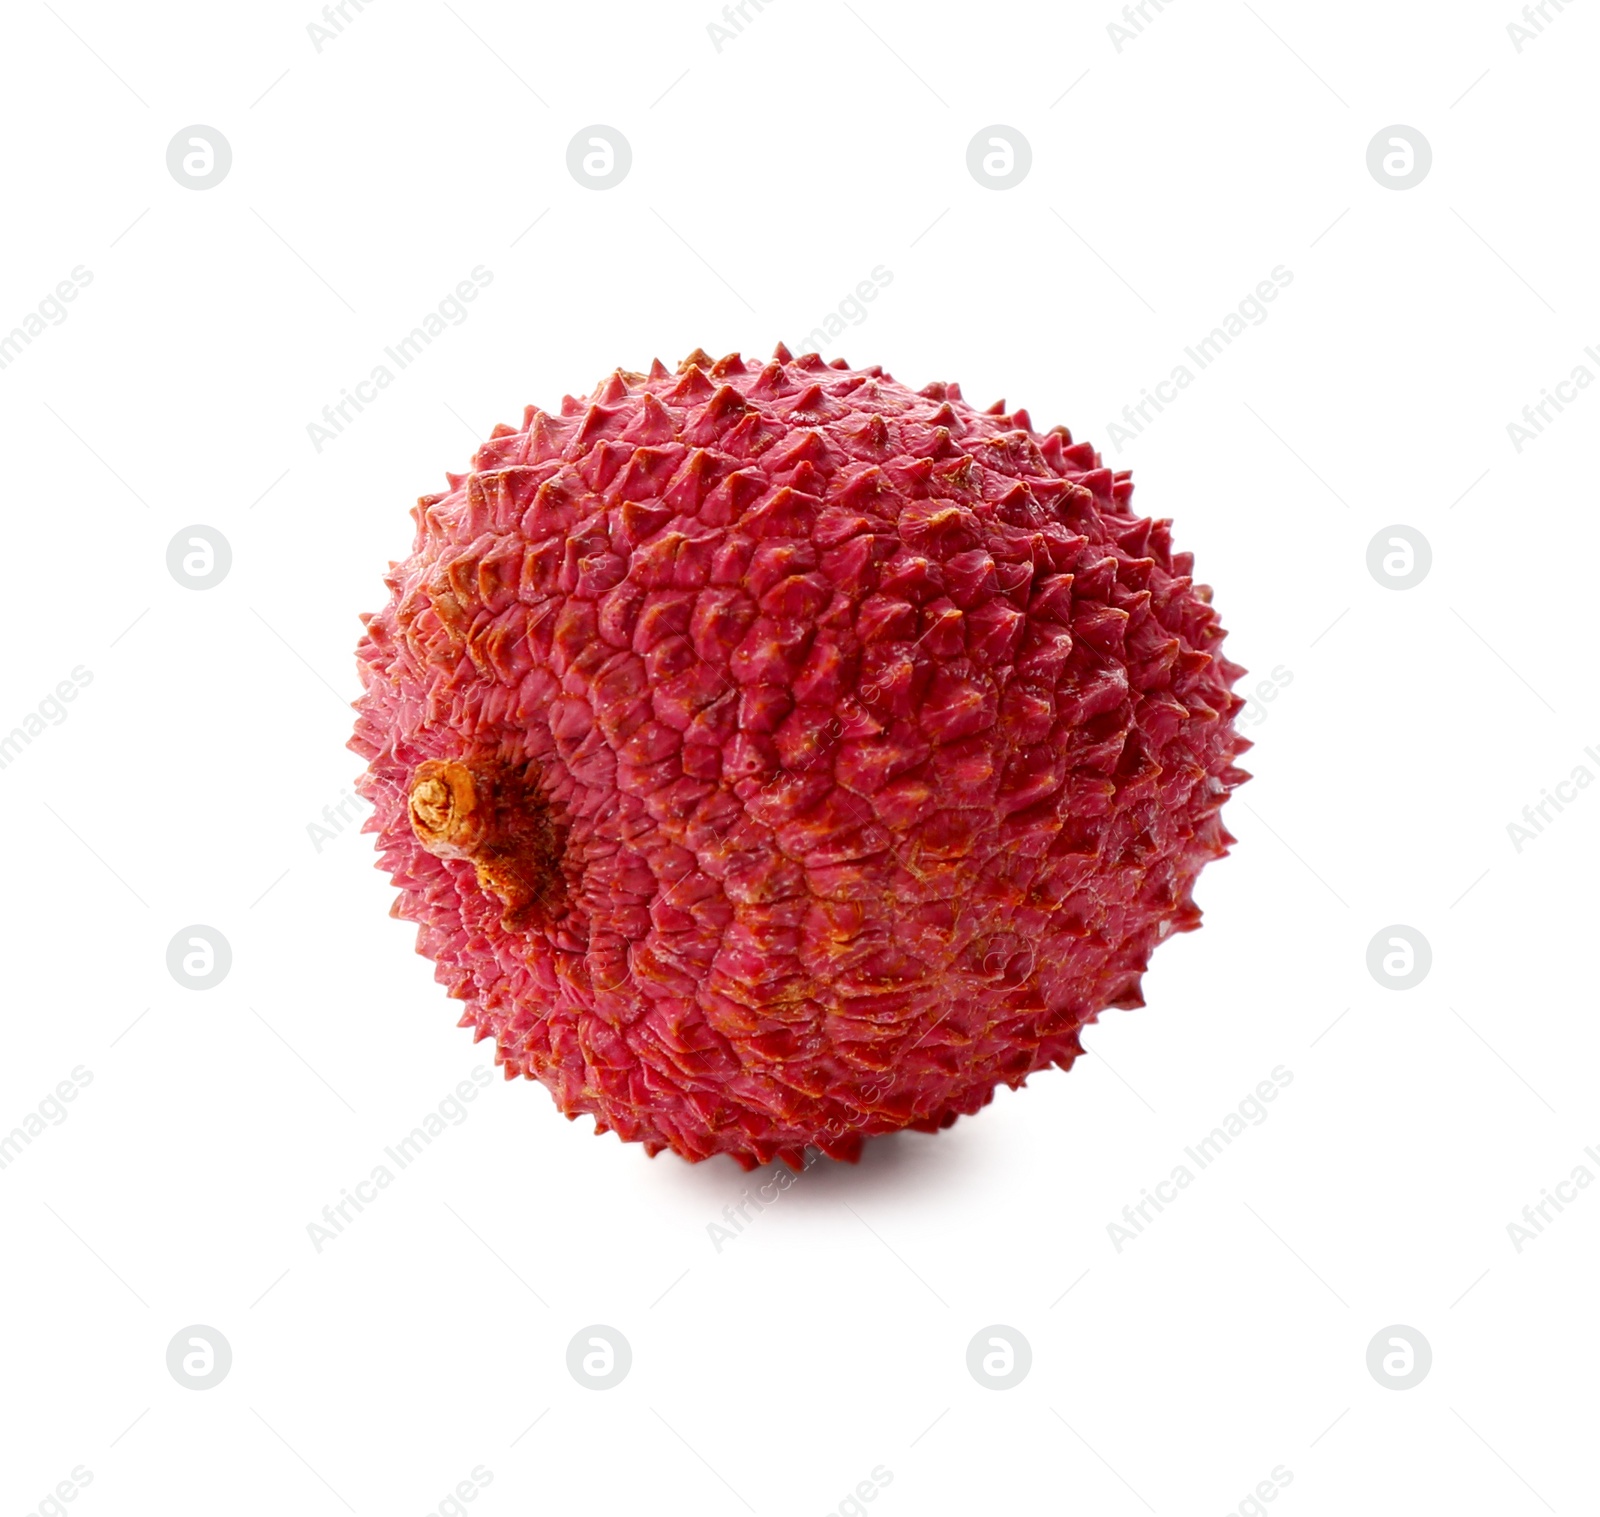 Photo of Whole ripe lychee fruit isolated on white